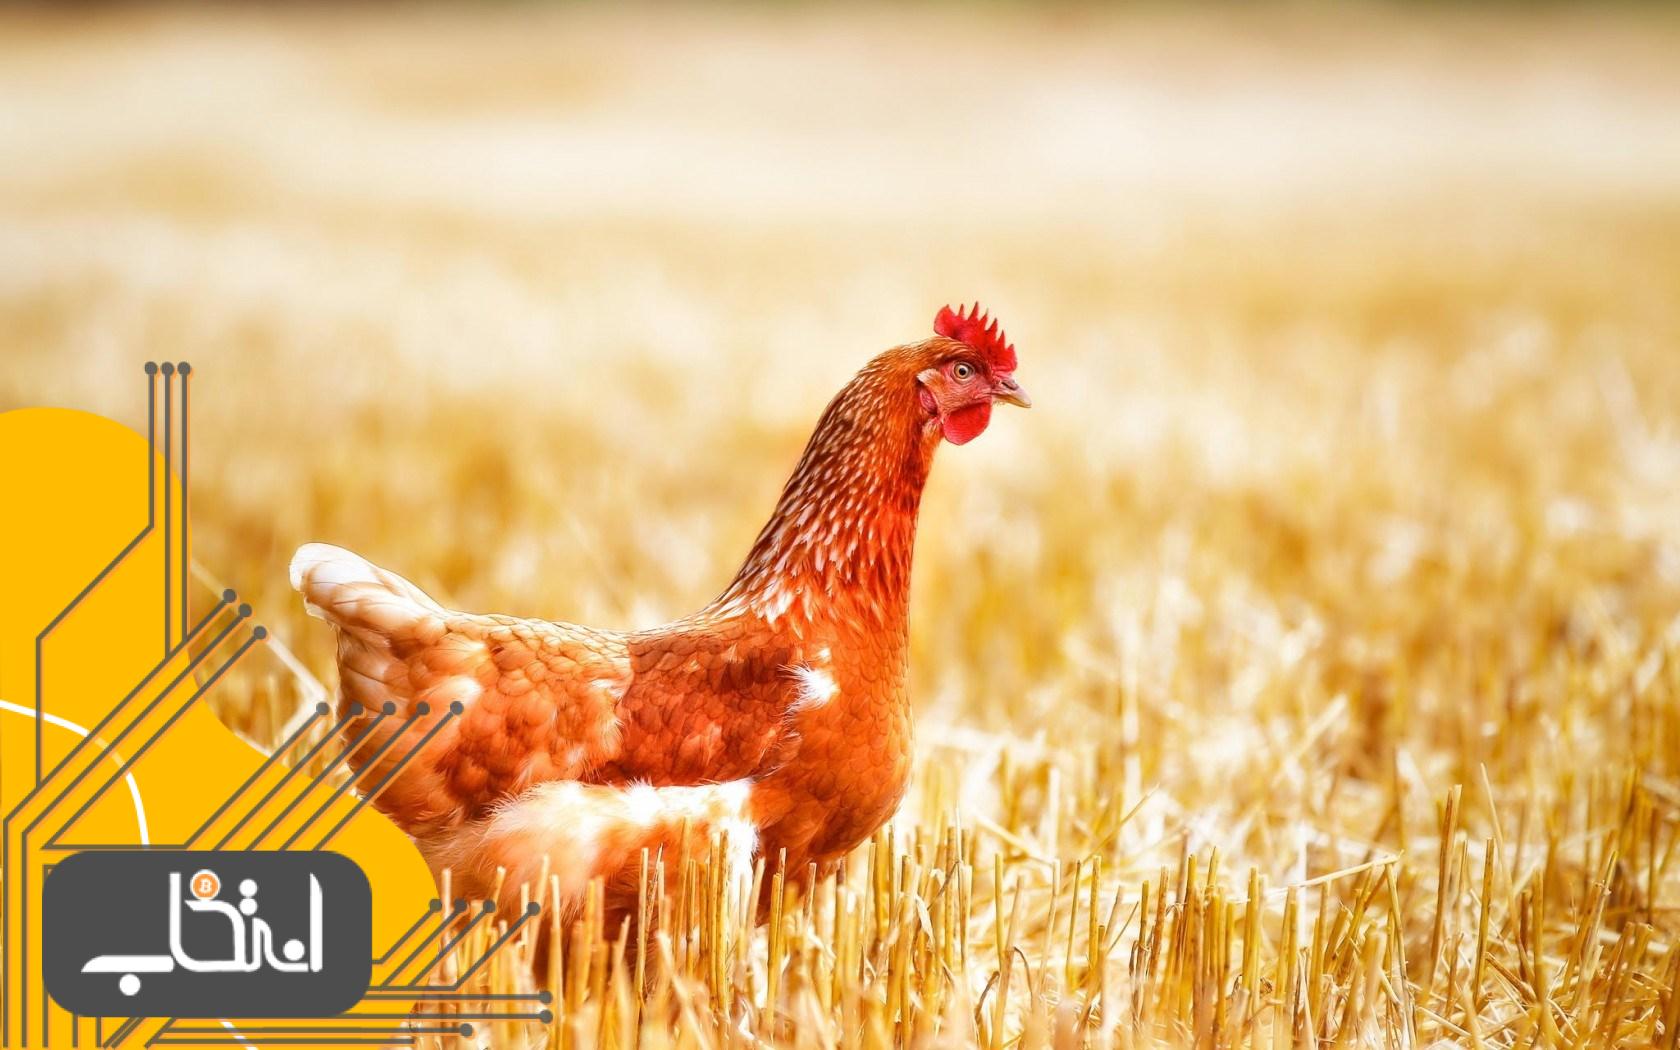 تعاونی کشاورزی ایالت آرکانزاس بلاک چین را برای حمل و نقل محموله های مرغ آزمایش کرد